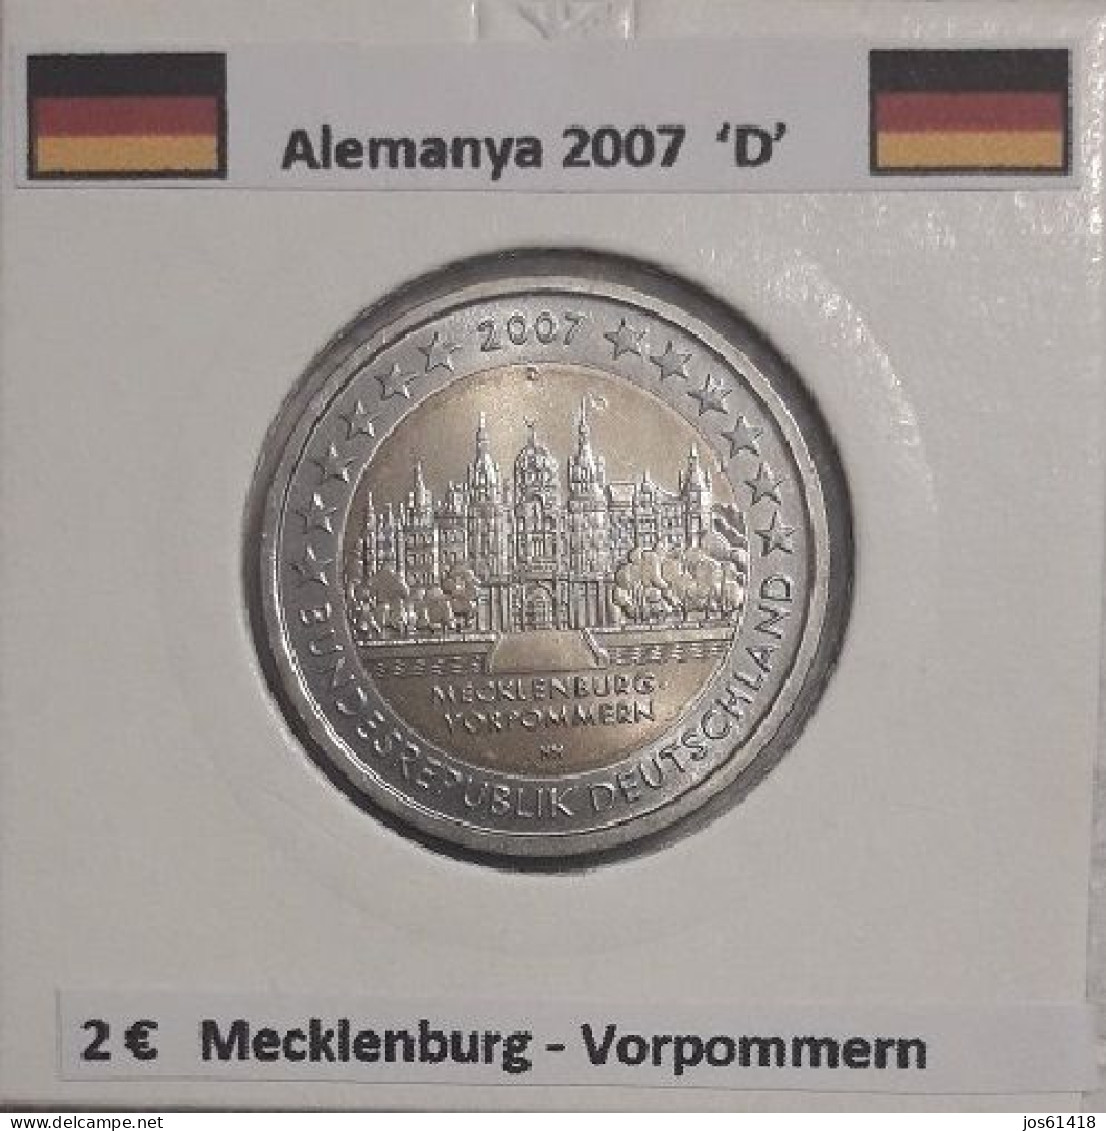 2 Euros Alemania / Germany 2007 Mecklenburg-Vorpommern  D O G Sin Circular - Deutschland